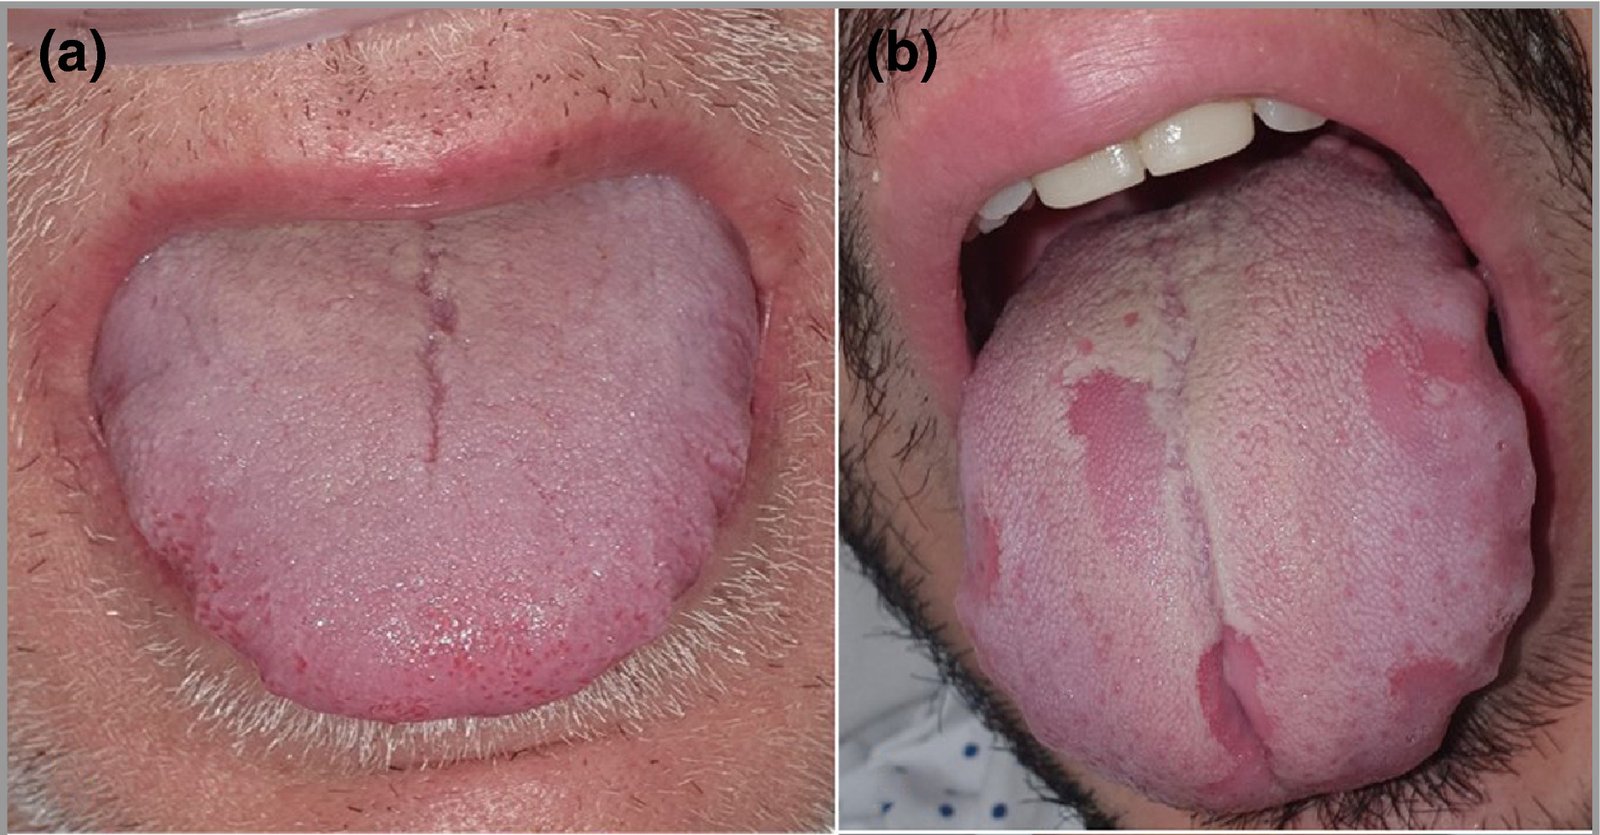 La lengua hinchada o irregular puede ser otro síntoma de COVID-19